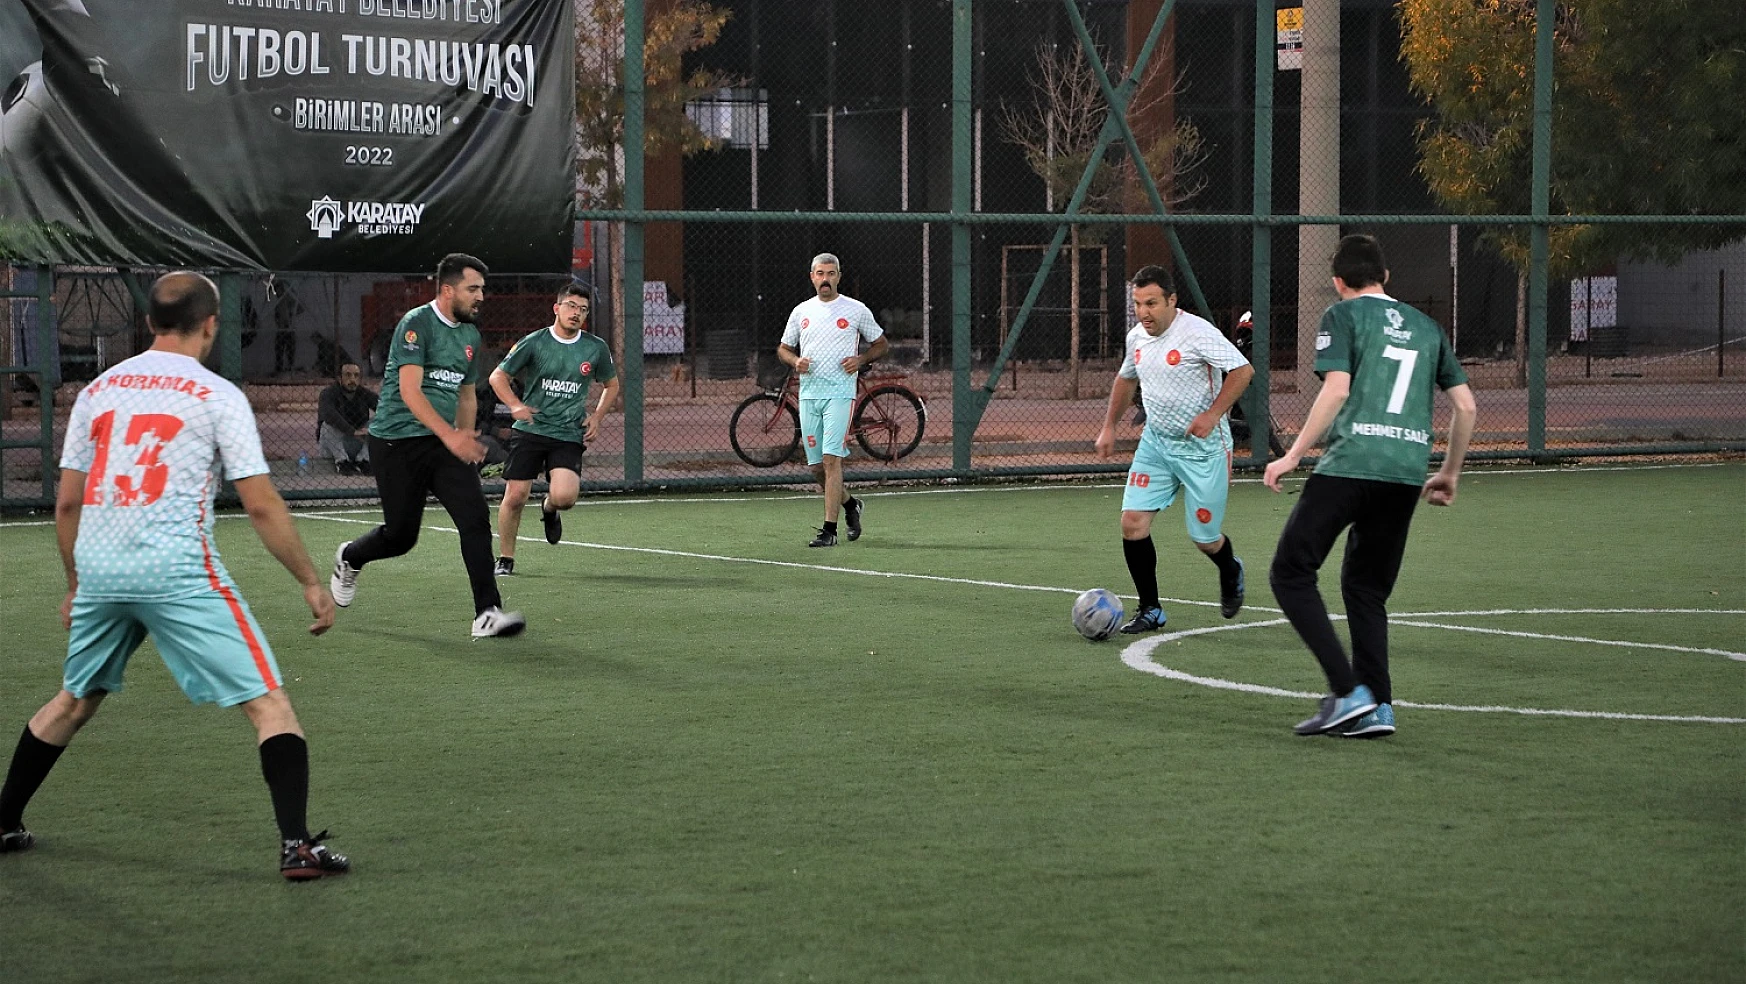 Karatay Belediyesi Birimler Arası Futbol Turnuvası Başladı